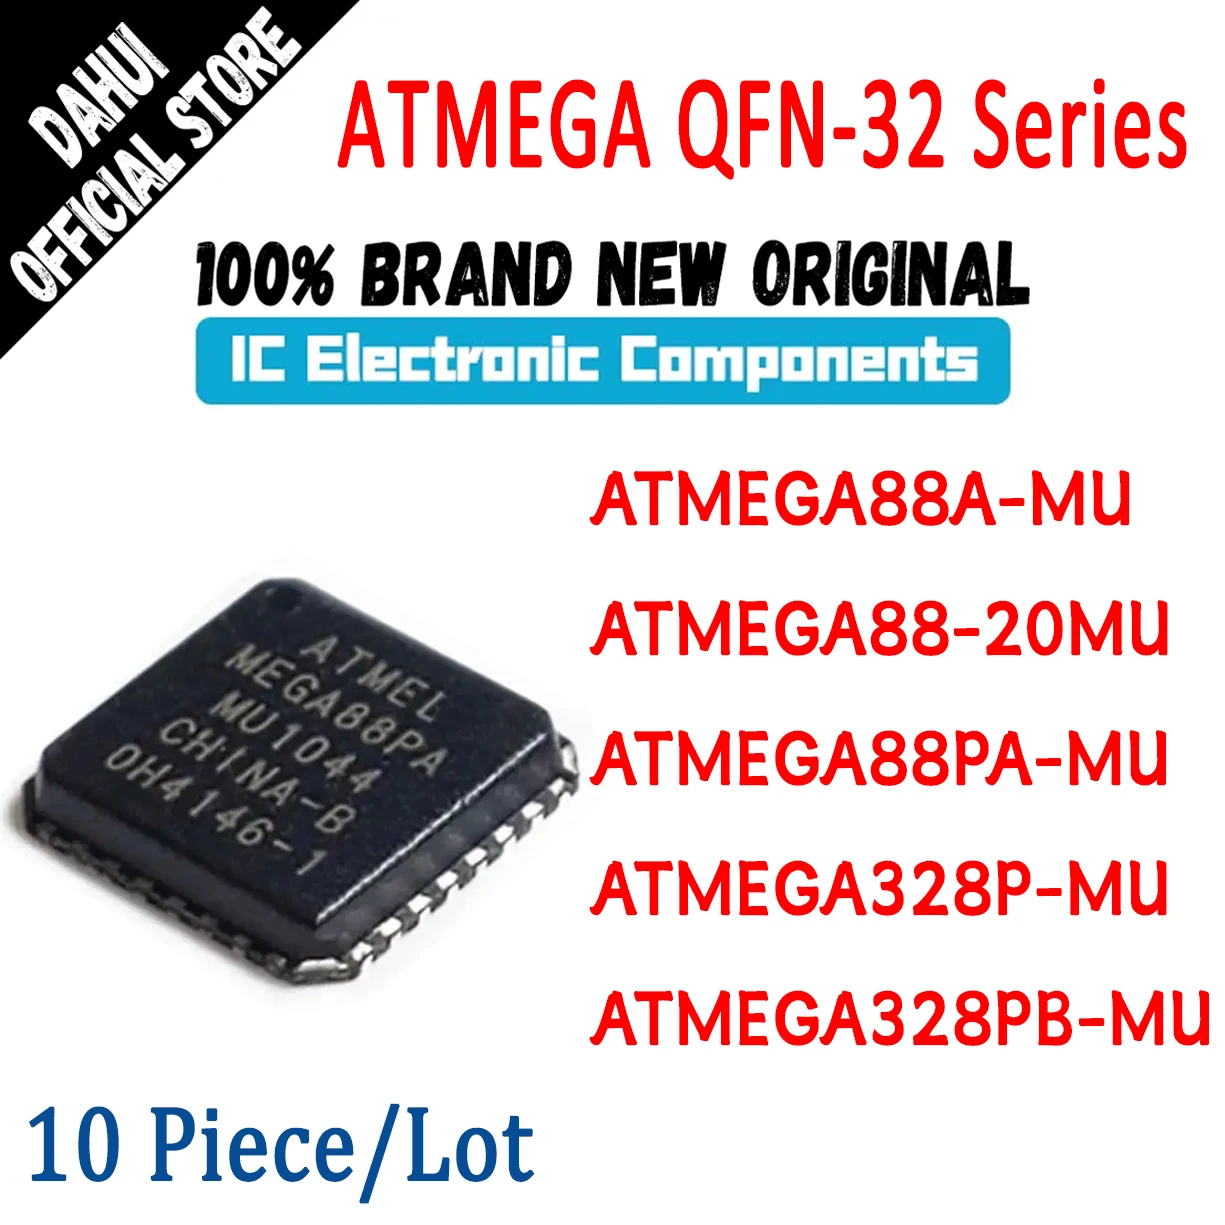 

10Pcs ATMEGA88A-MU ATMEGA88-20MU ATMEGA88PA-MU ATMEGA328P-MU ATMEGA328PB-MU ATMEGA88 ATMEGA328 ATMEGA IC MCU Chip QFN32